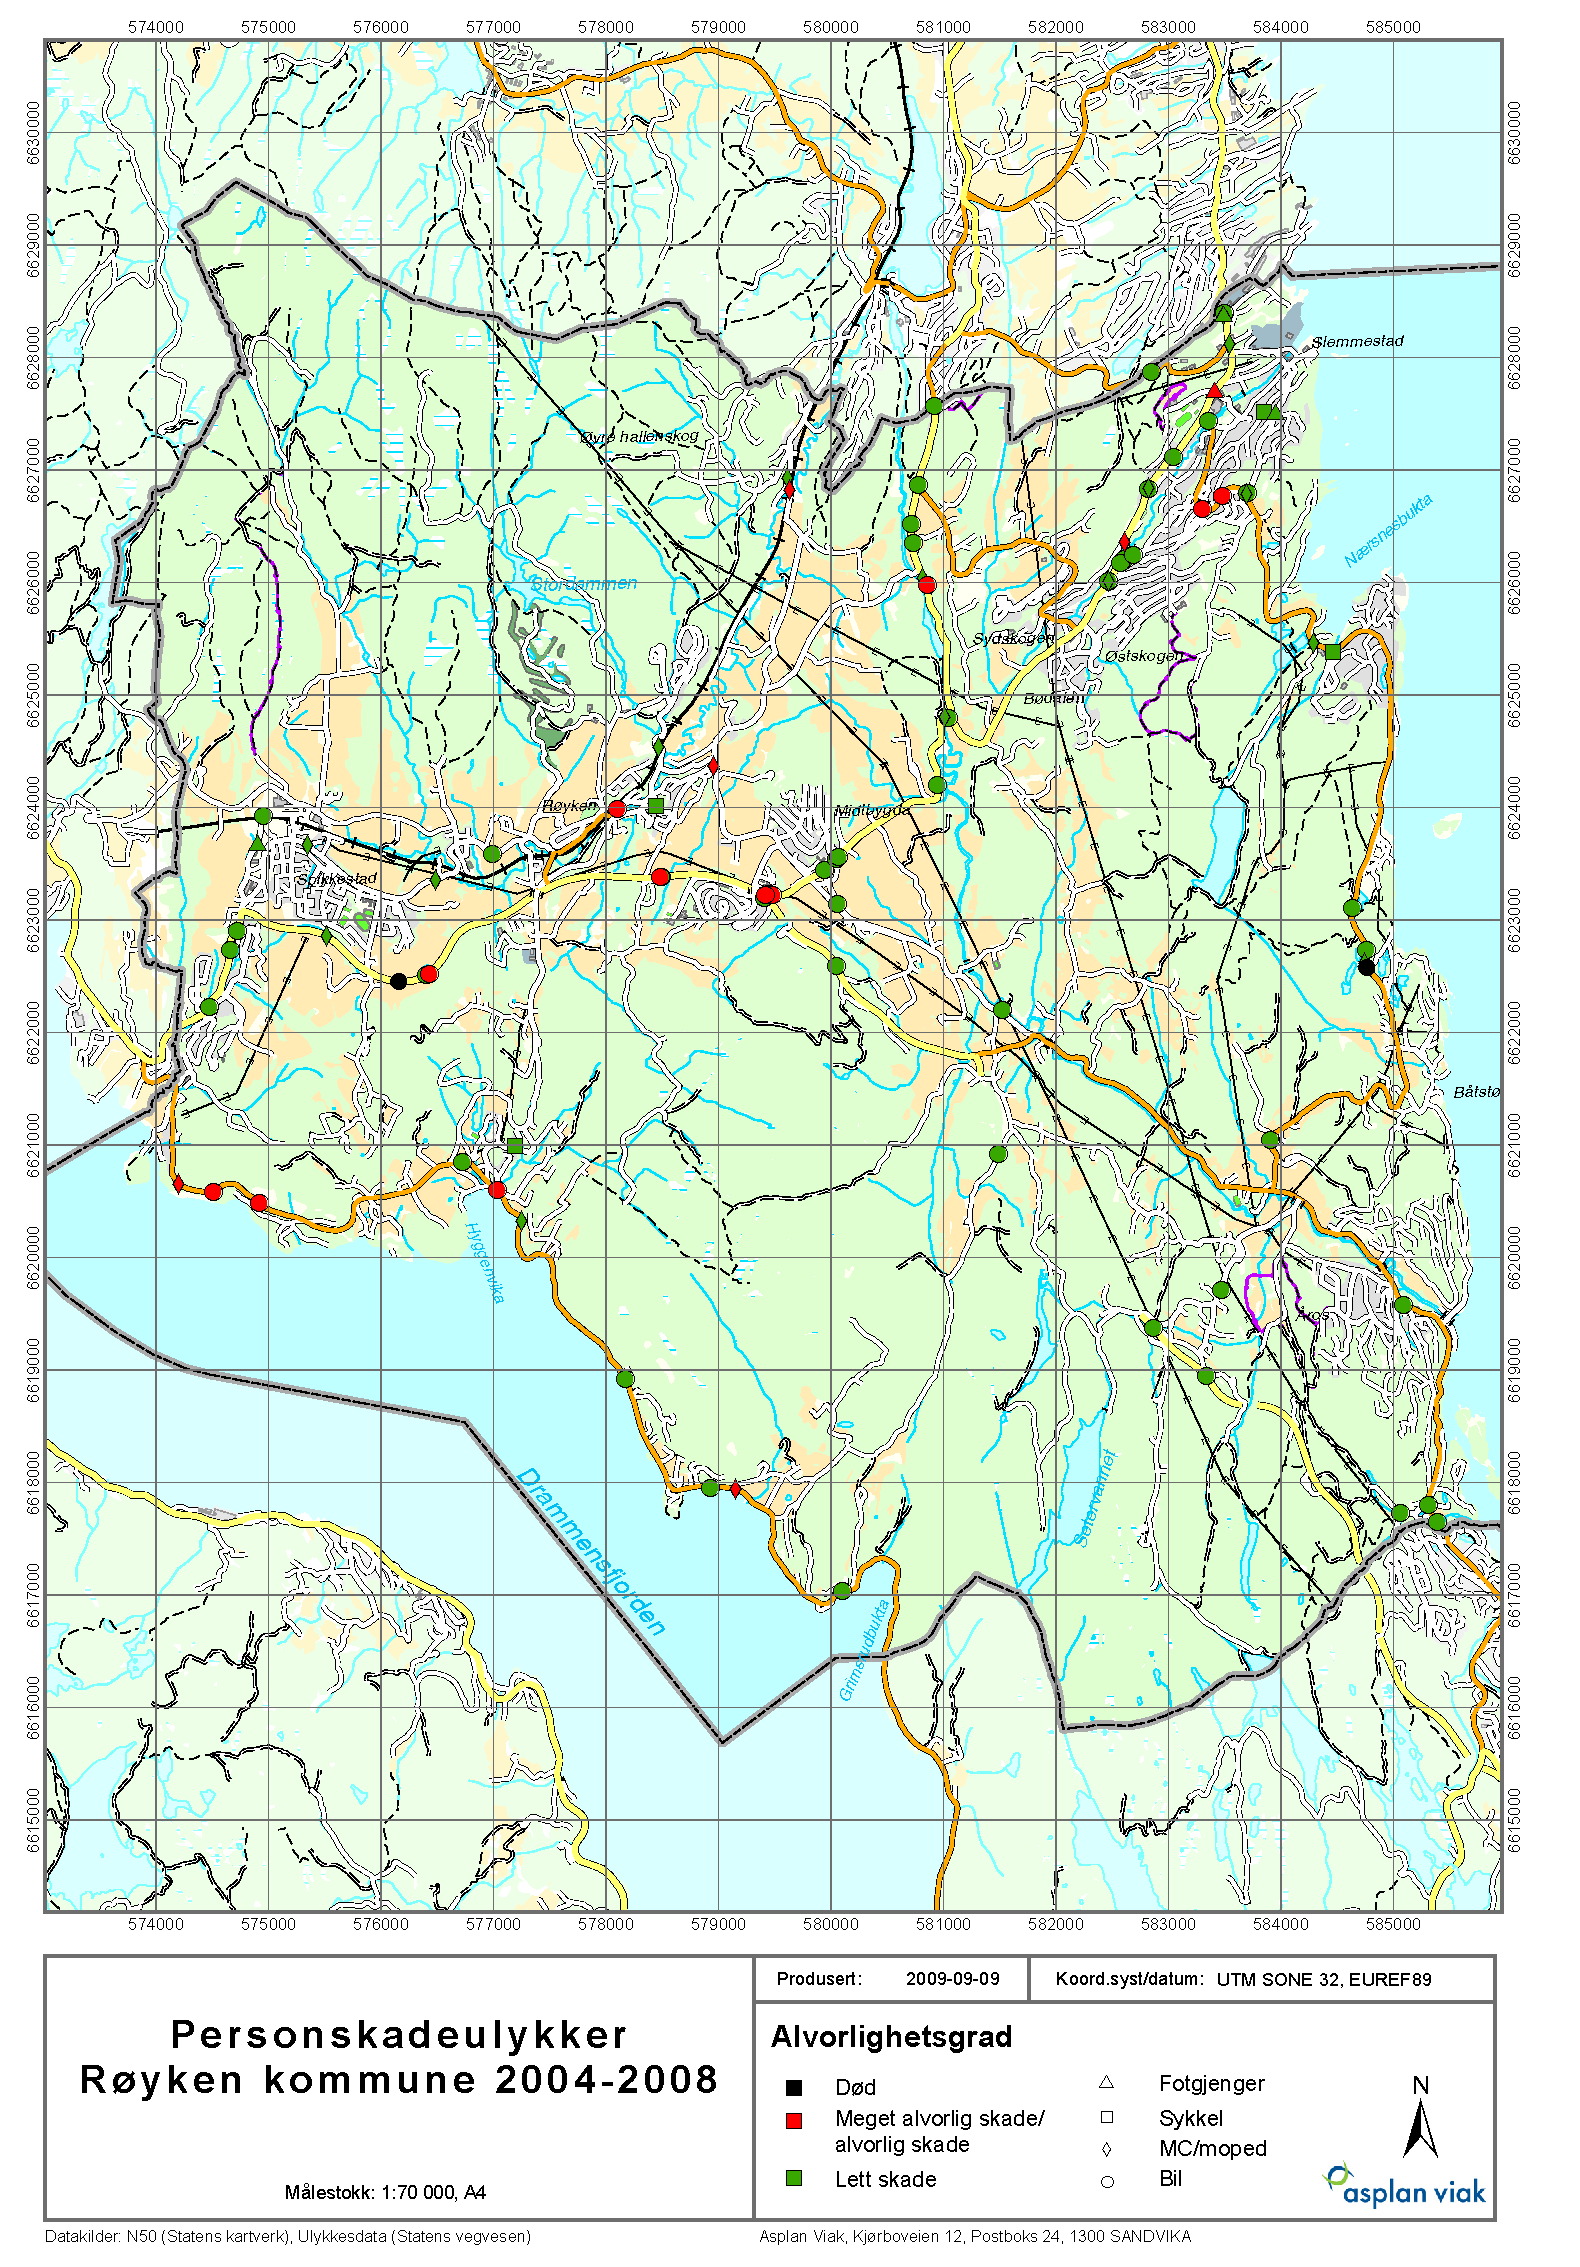 Trafikksikkerhetsplan for Røyken kommune 2011-2014 62 Geografisk plassering av ulykkene Figur 34 viser ulykkenes geografiske